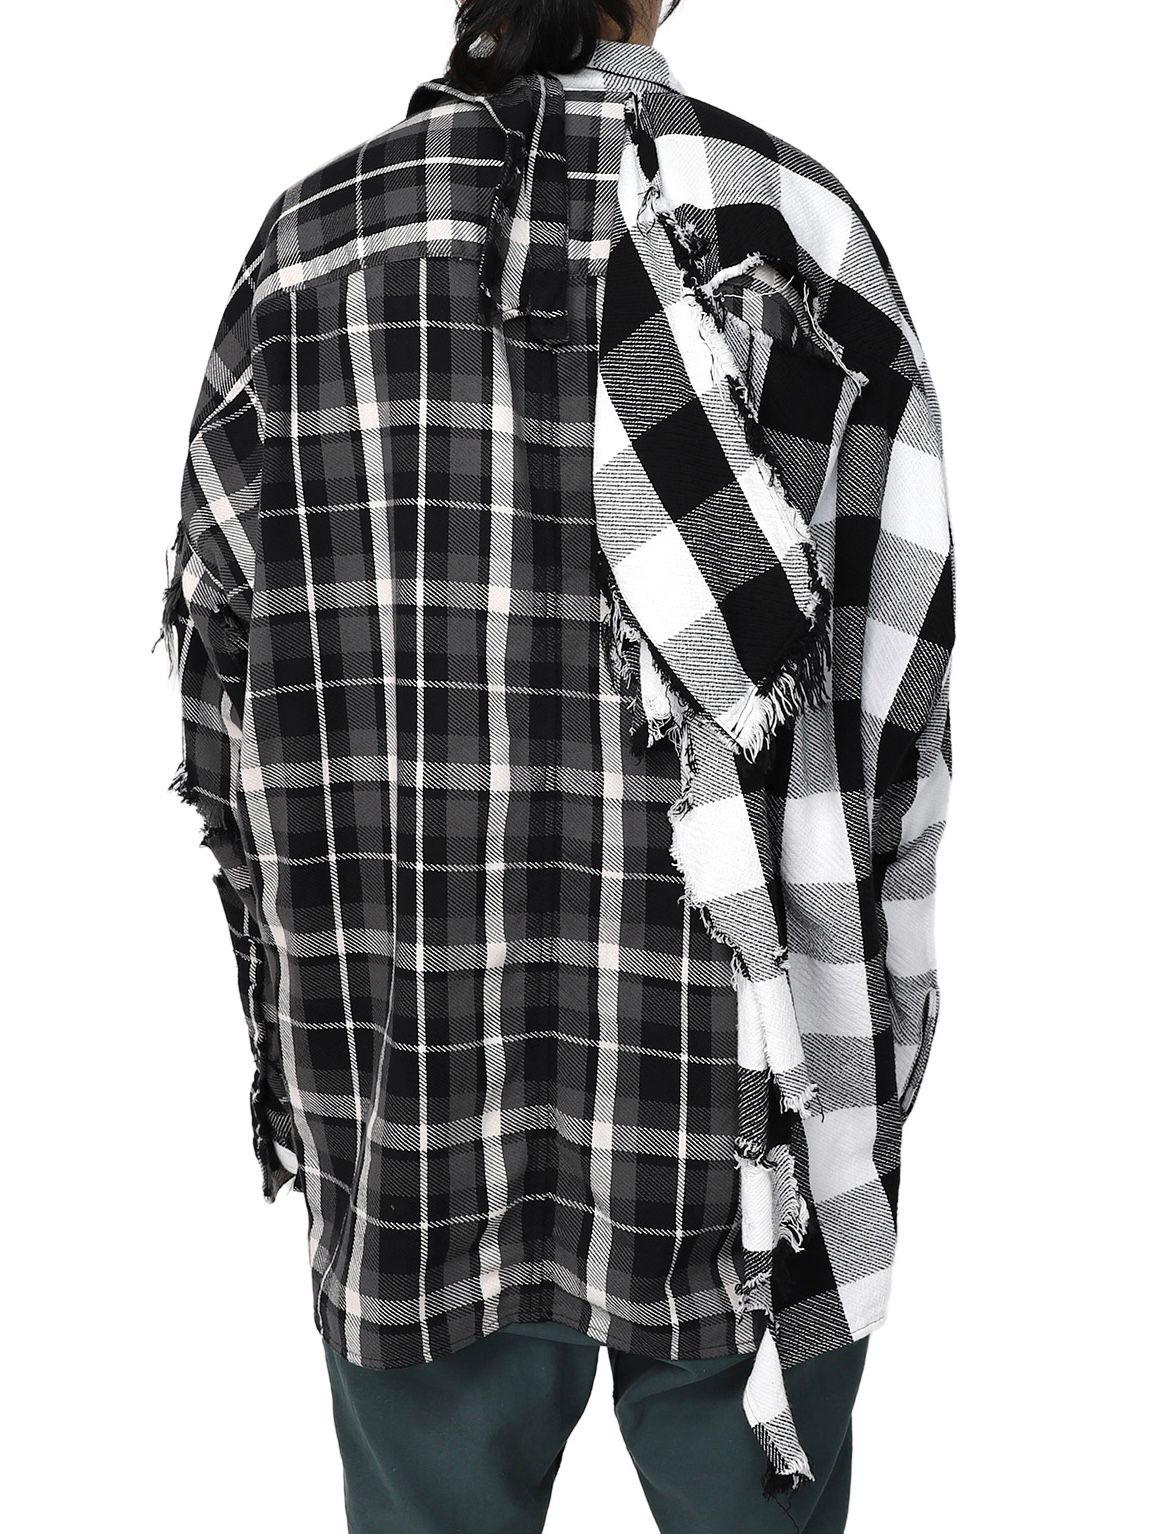 オーバーサイズ ドッキング チェックシャツ / Single Draped Check Shirt / ブラック - 44(S) - ブラック